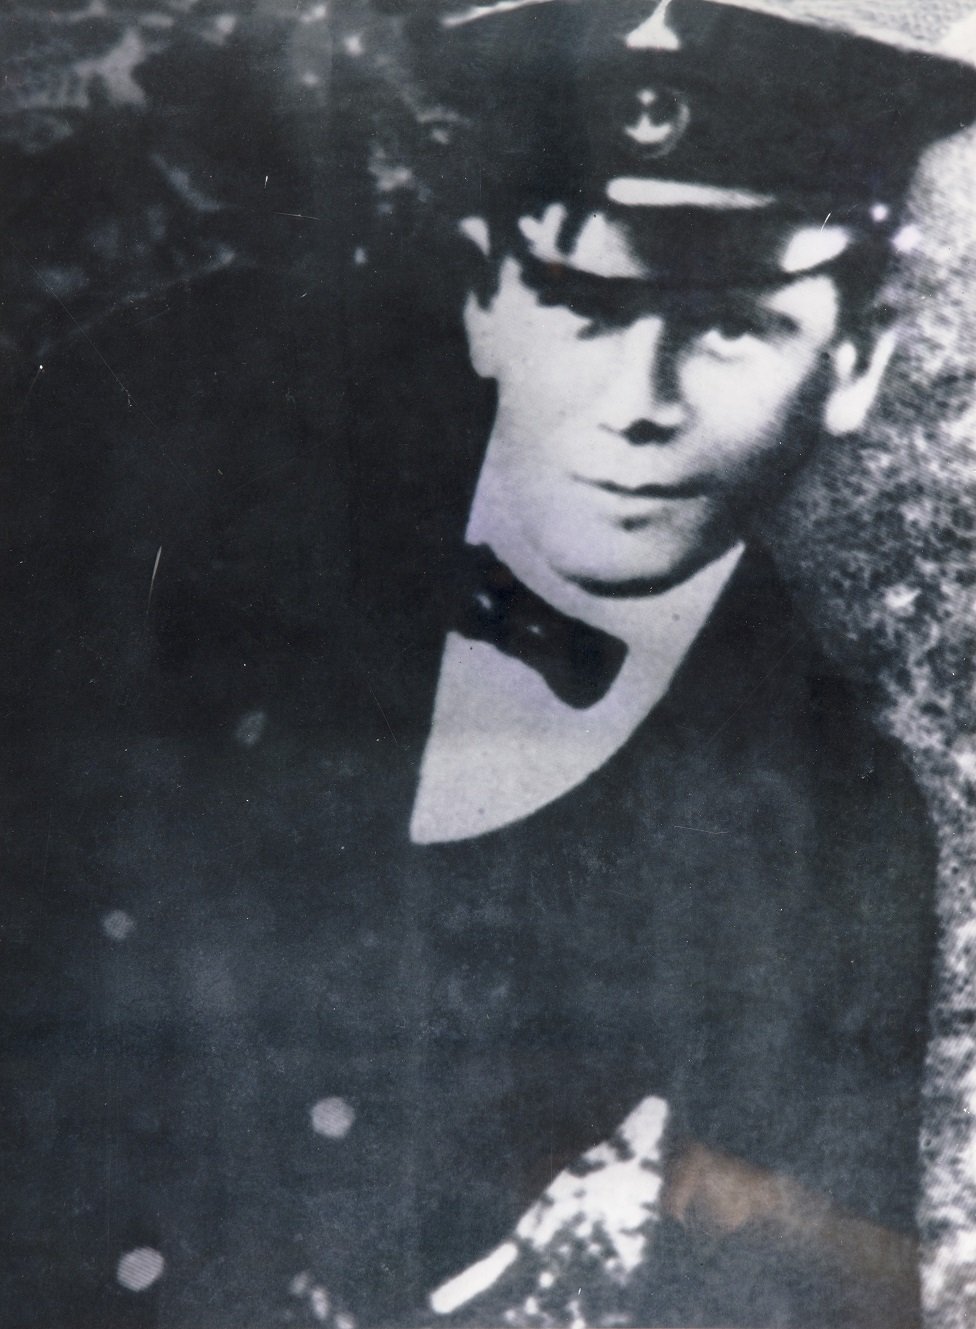 Frantiek Ra roen u Prerovu u Moravskoj 9. 12. 1889. narednik vodnik brodske struke, streljan kao voa pobune/Nenad Mandic/Pomorski muzej